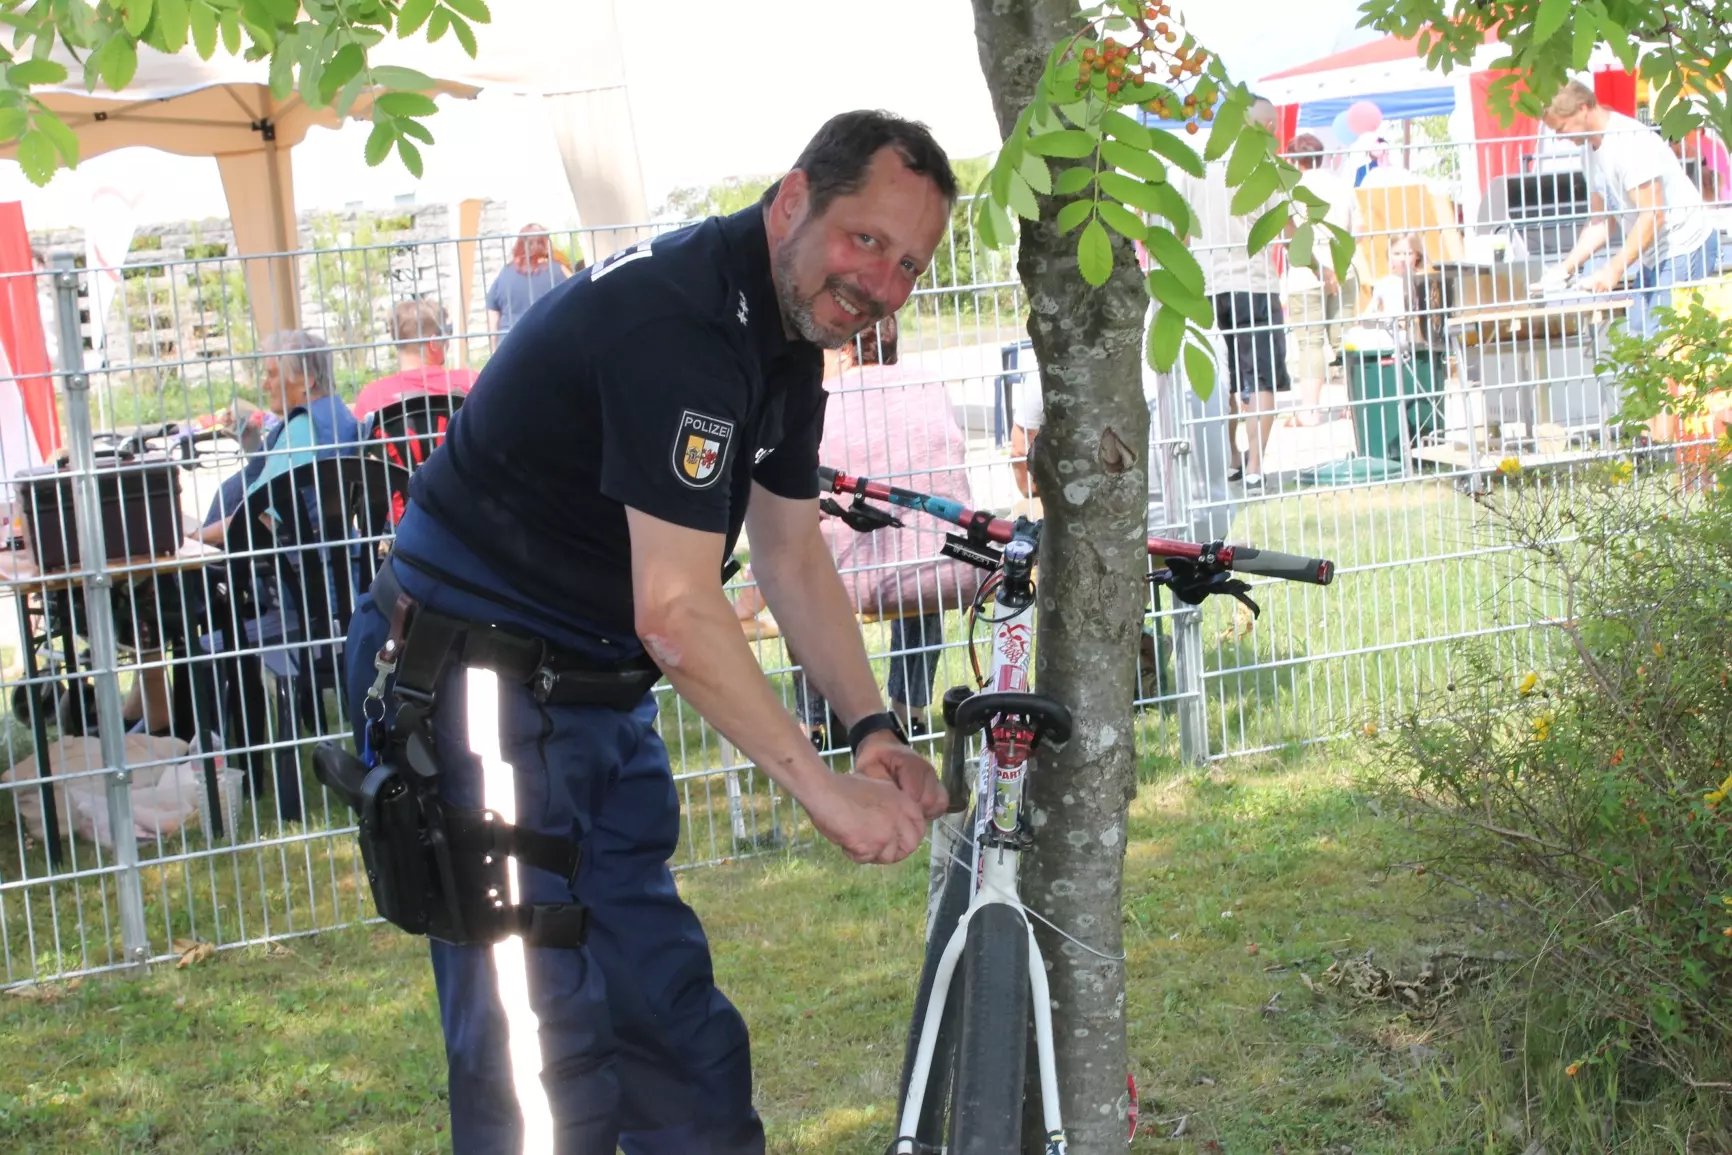 Polizist beim Fahrradklauen erwischt - das ist natürlich nur ein Sicherheitstest :)